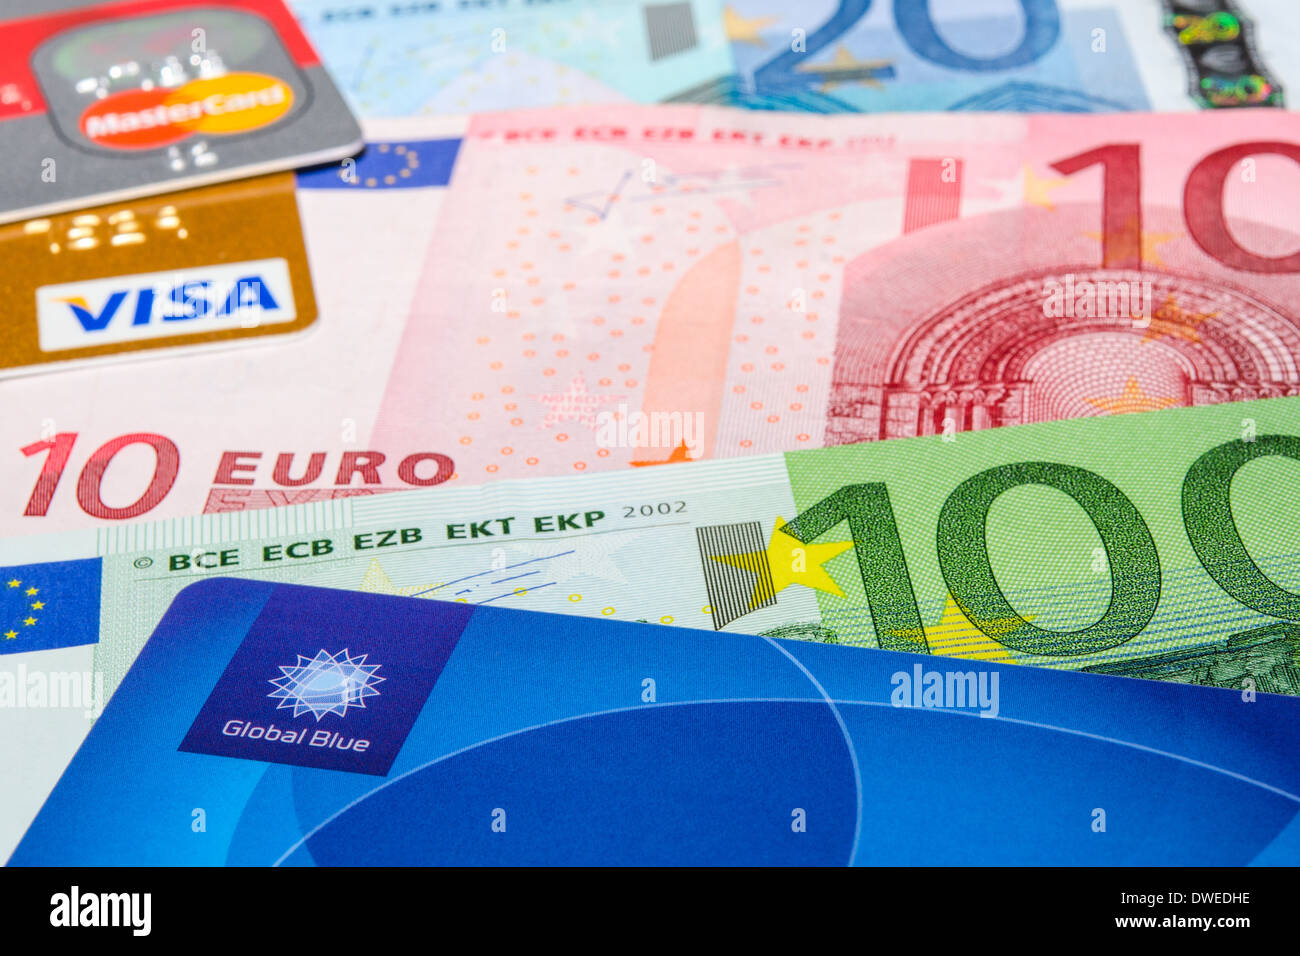 MUNICH, ALLEMAGNE - le 23 février 2014 : Global Blue, cartes de crédit Visa et MasterCard sur les billets en euros Banque D'Images